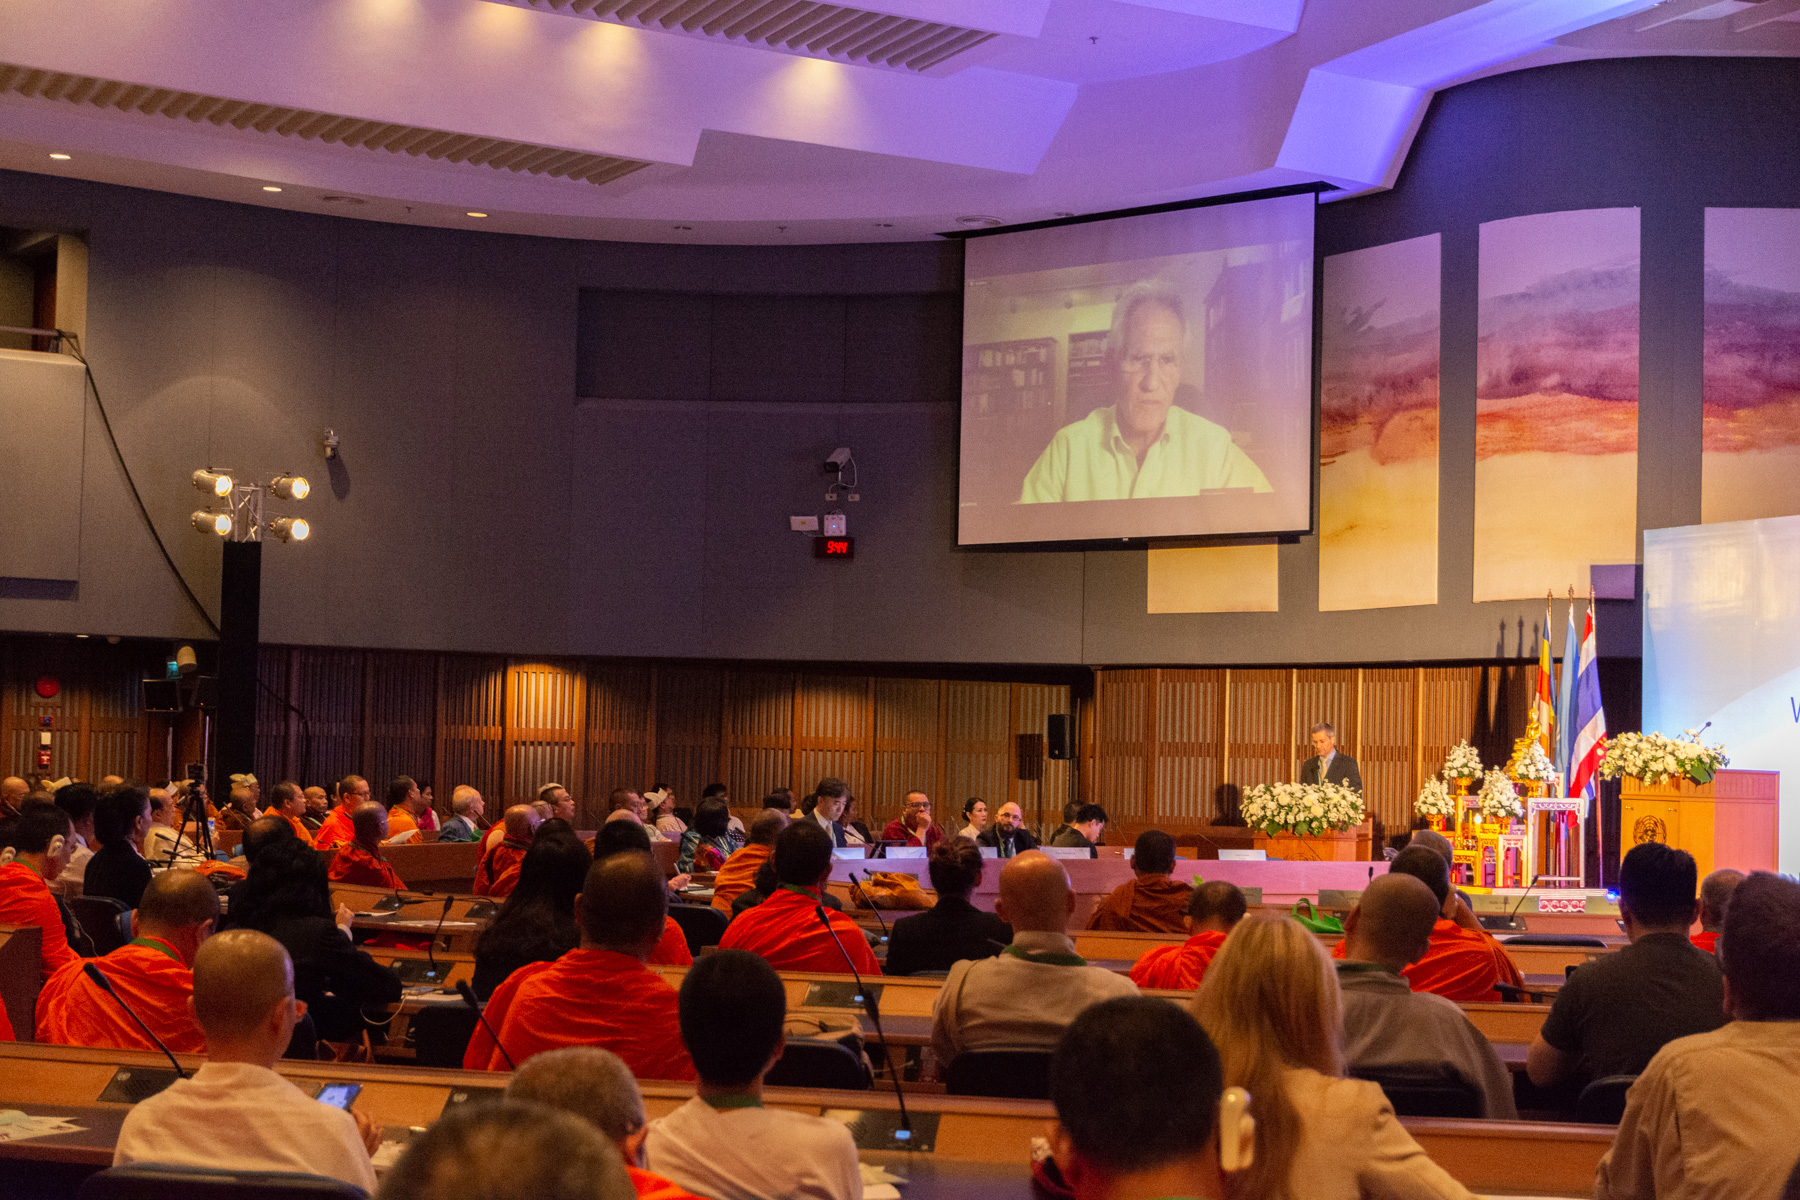 Részt vettünk az MCU, a Főiskola és a Magyarországi Mindfulness Egyesület által szervezett World Mindfulness Forum című konferencián a Bangkokban található ENSZ székházban. A konferenciát követő Vészák ünnepség a Buddhamonthon parkban zárult. Végül részt vettünk az MCU IBSC új épületének átadásán, ami után megbeszélést folytattunk az IBSC vezetésével.